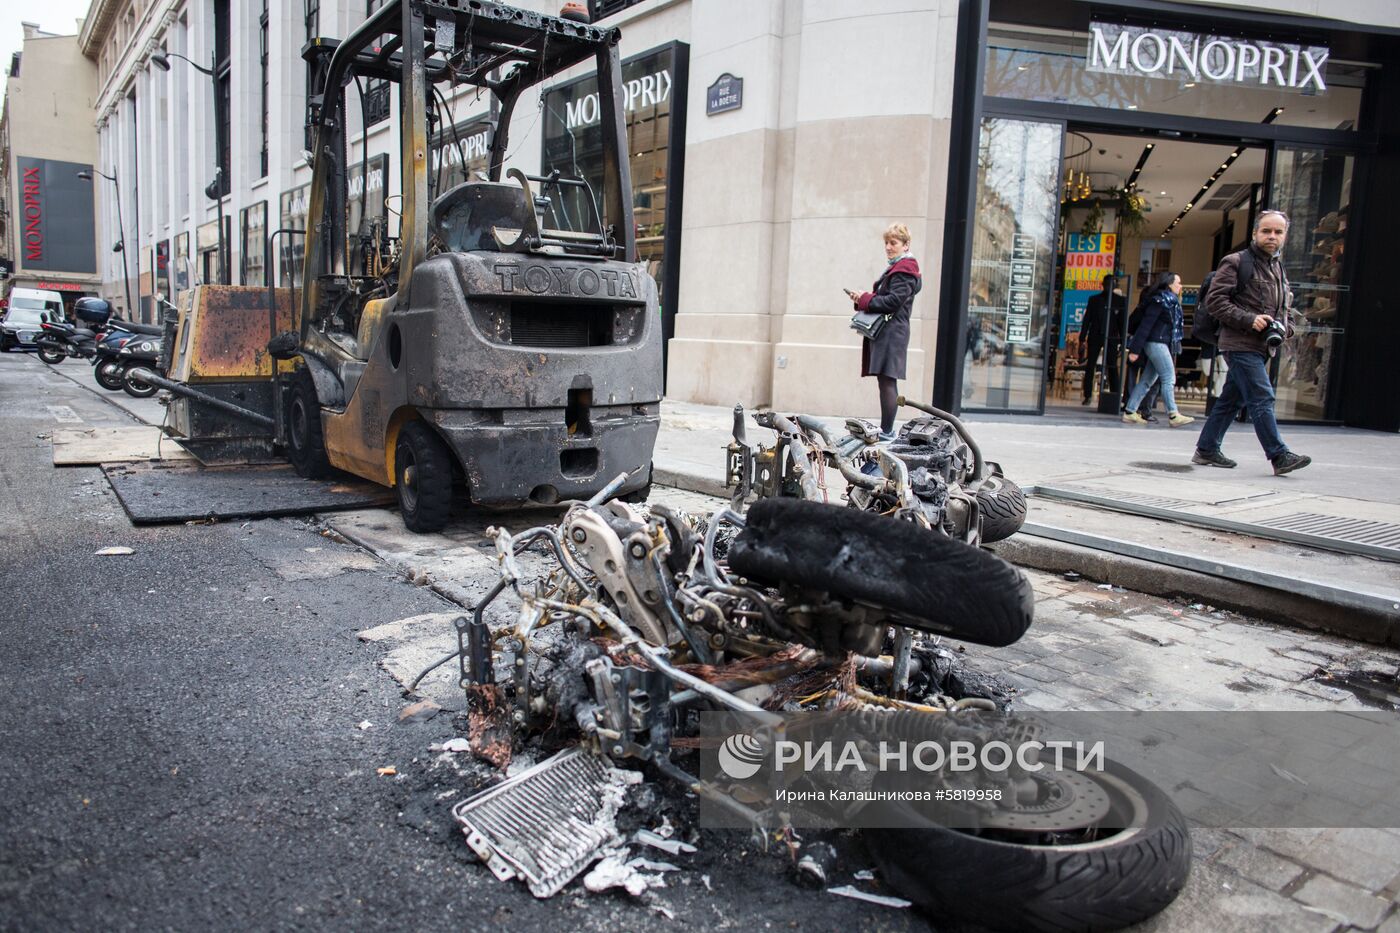 Последствия беспорядков в ходе акции "желтых жилетов" в Париже